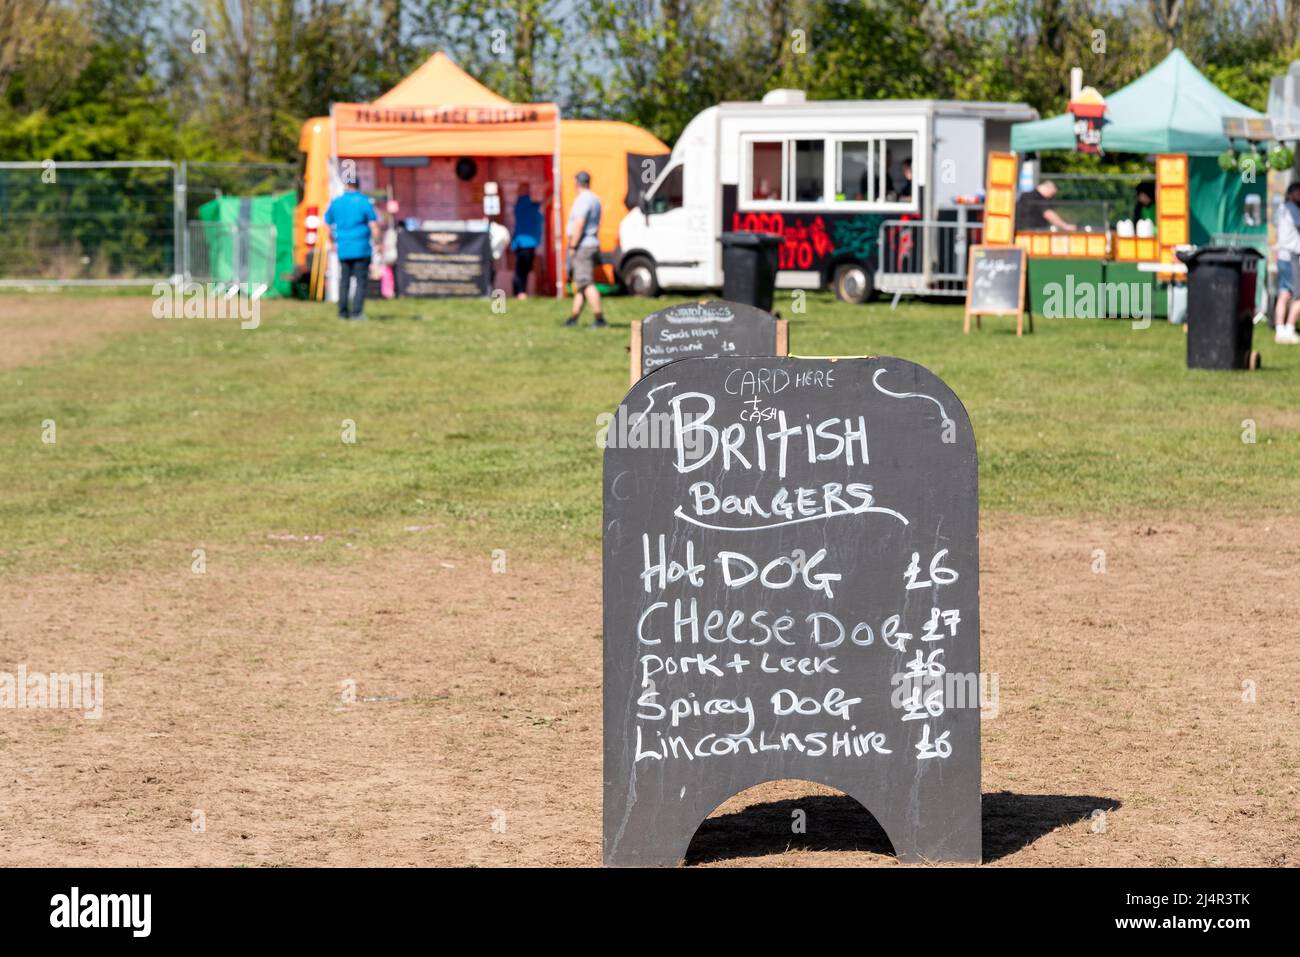 Lebensmittelhändler bei einer Außenveranstaltung, die für Kunden bereit ist. Preise für britische Burger, Hot Dog, Cheese Dog, Schweinefleisch, würzigen Hund, Würstchen Stockfoto